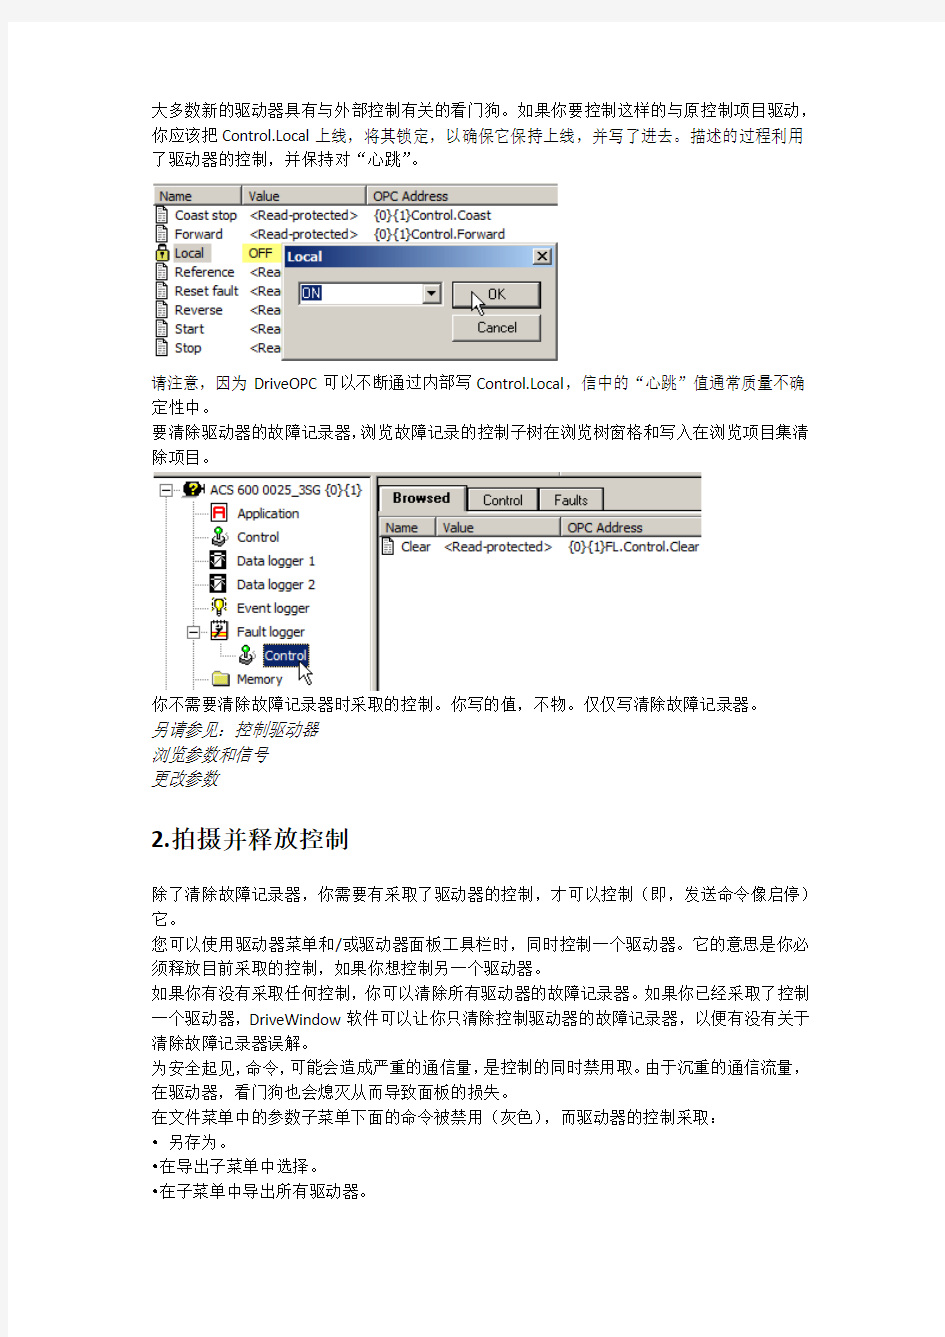 DriveWindow2用户手册5